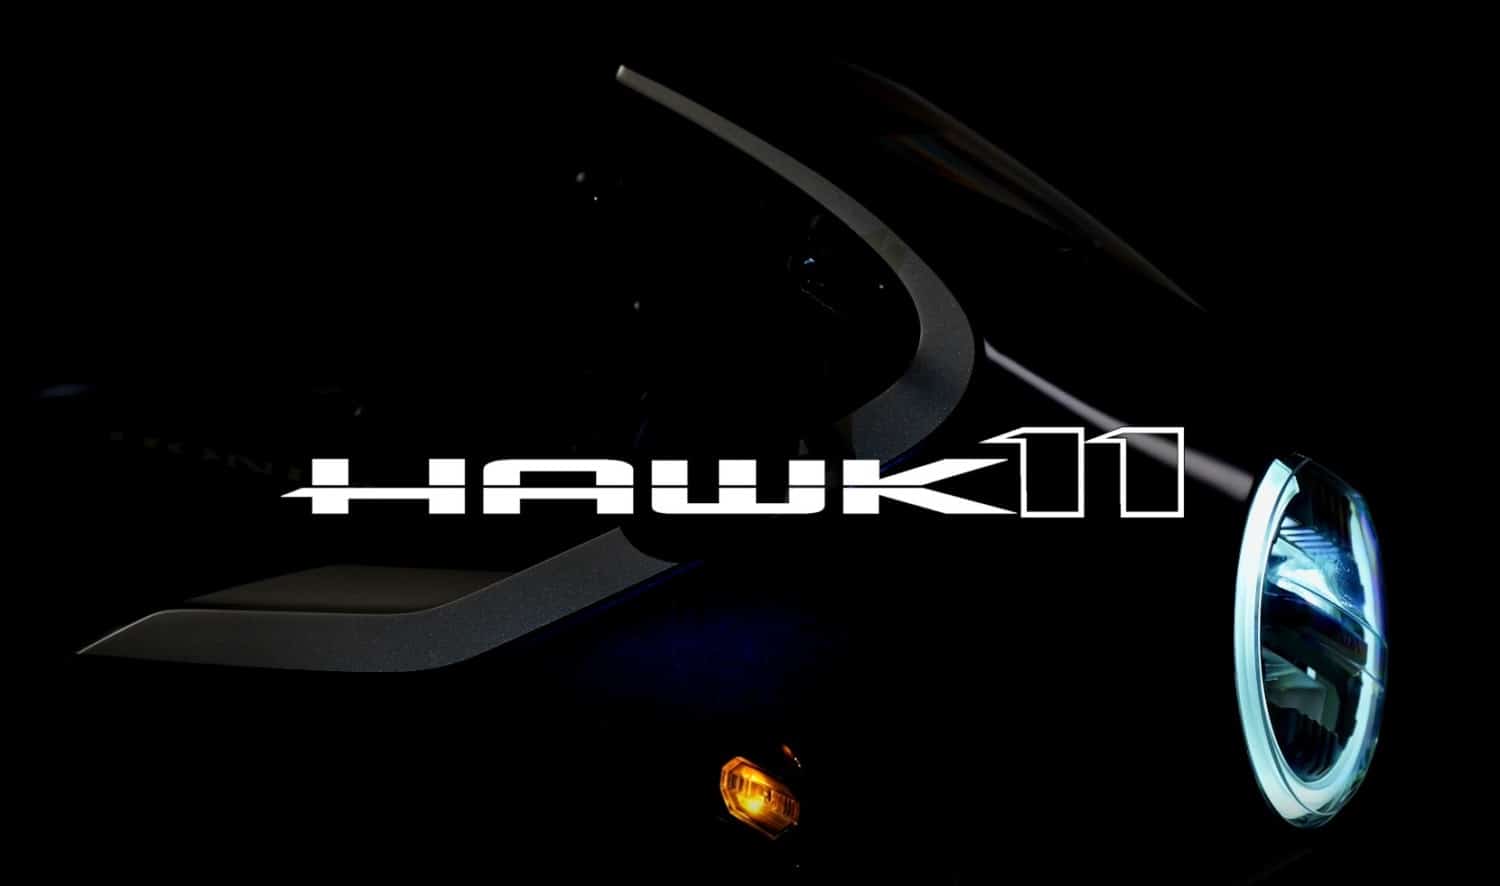 Ny Honda Hawk 11 lige på trapperne?